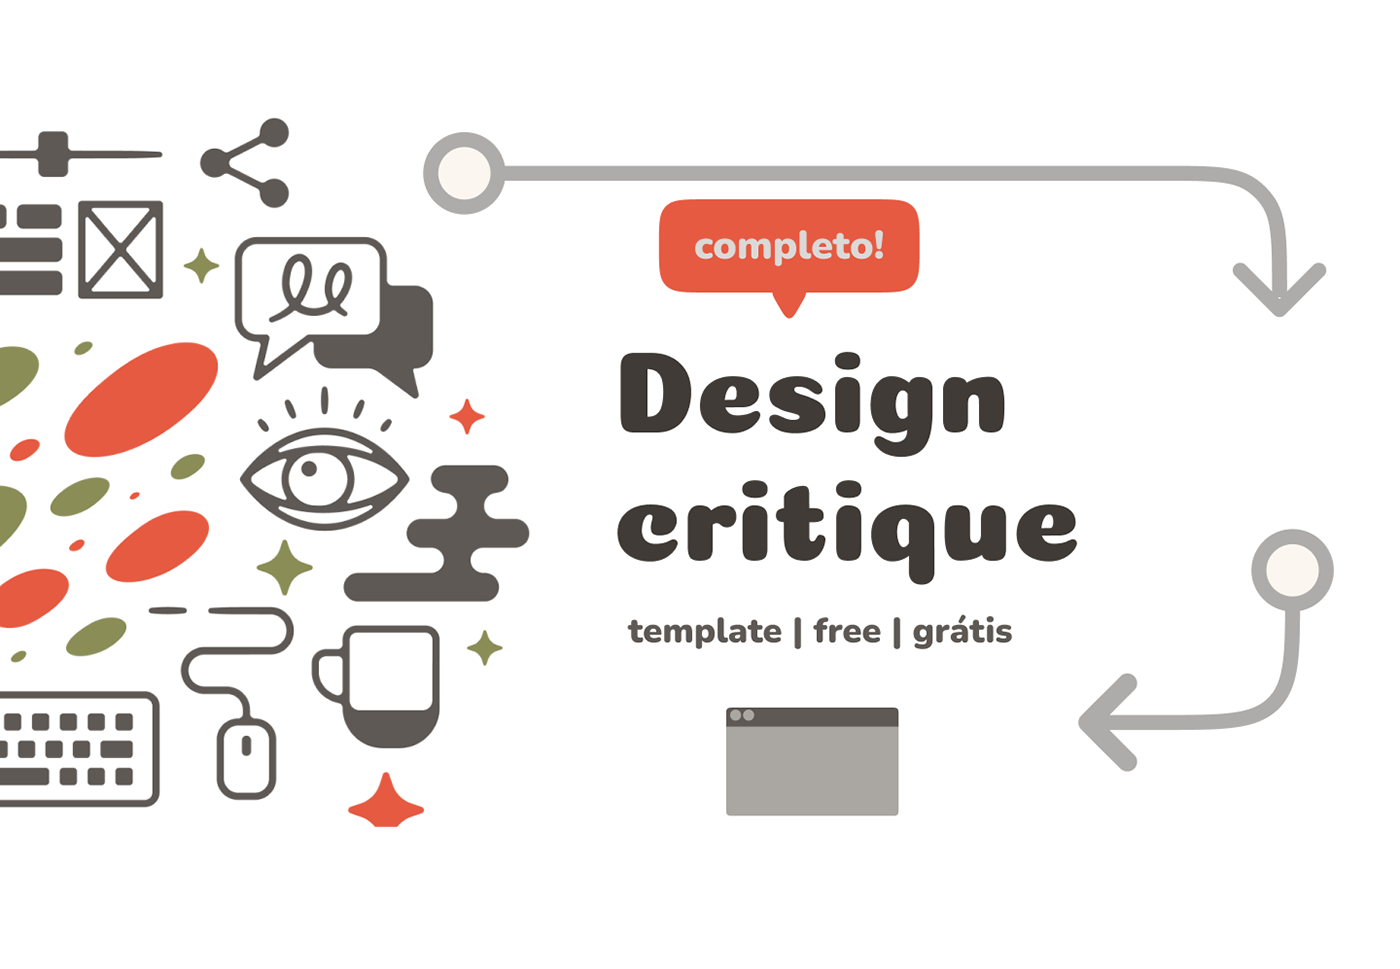 free grátis template design critique